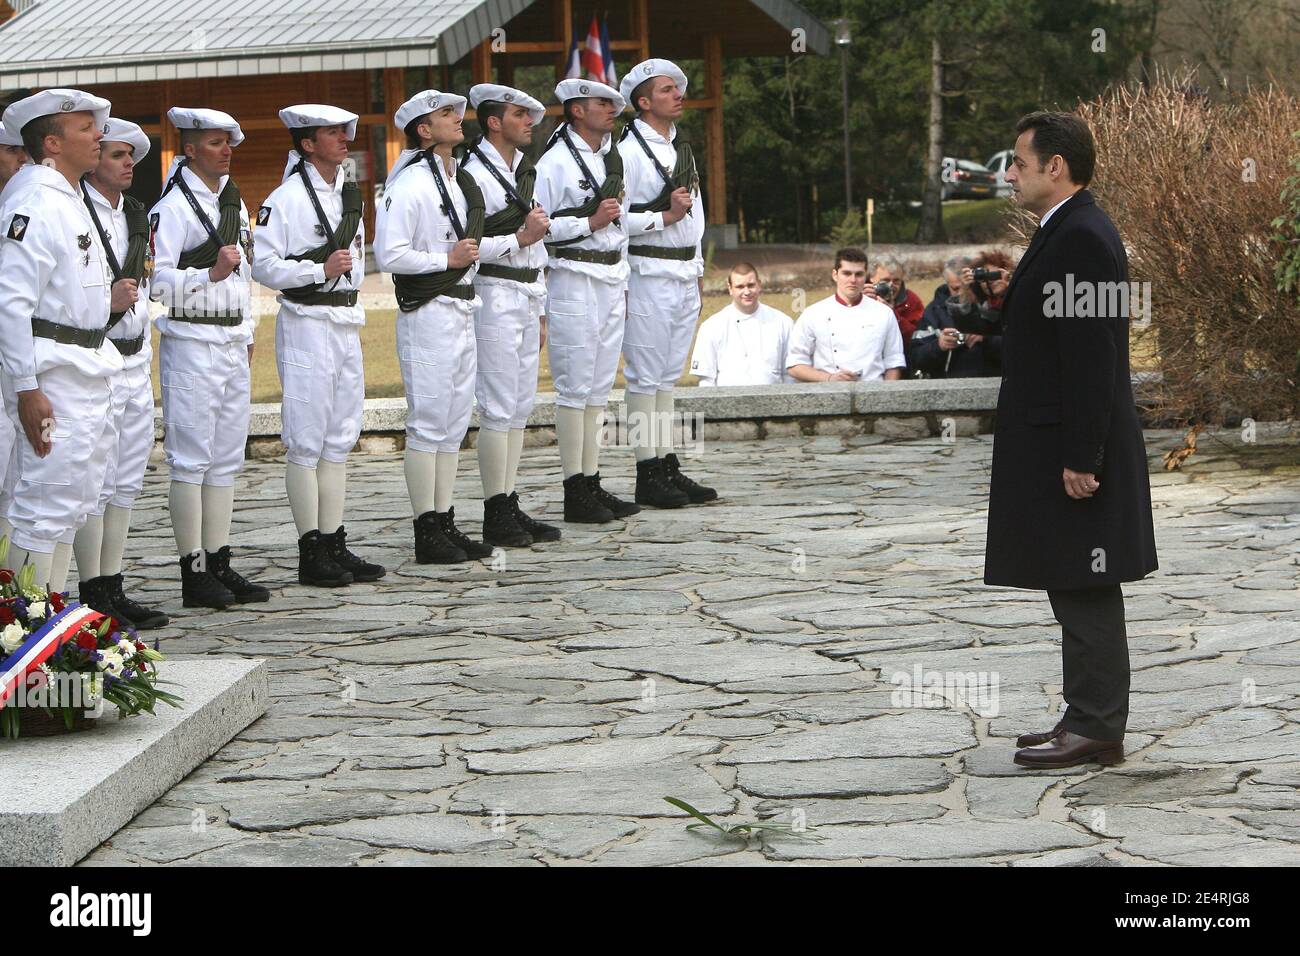 Le président Nicolas Sarkozy dirige une cérémonie militaire au cimetière de la Morette à Thones, dans les Alpes françaises, en France, le 18 mars 2008, pour honorer la résistance française durant la deuxième Guerre mondiale Photo de Mousse/ABACAPRESS.COM Banque D'Images